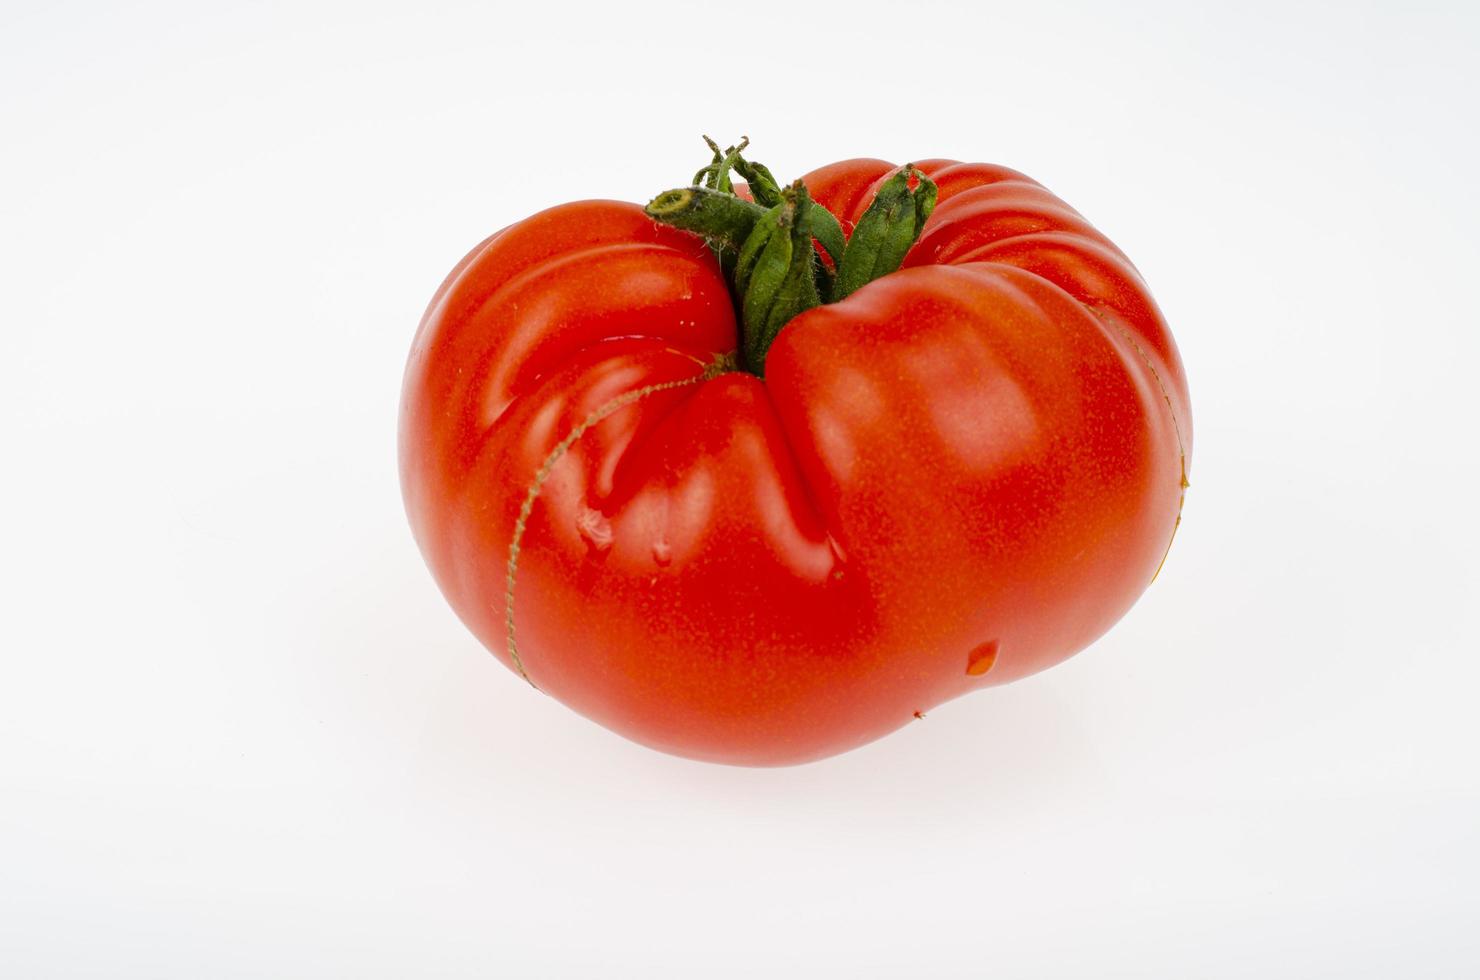 enkele rijpe rode vlees tomaat geïsoleerd op een witte achtergrond. studio foto